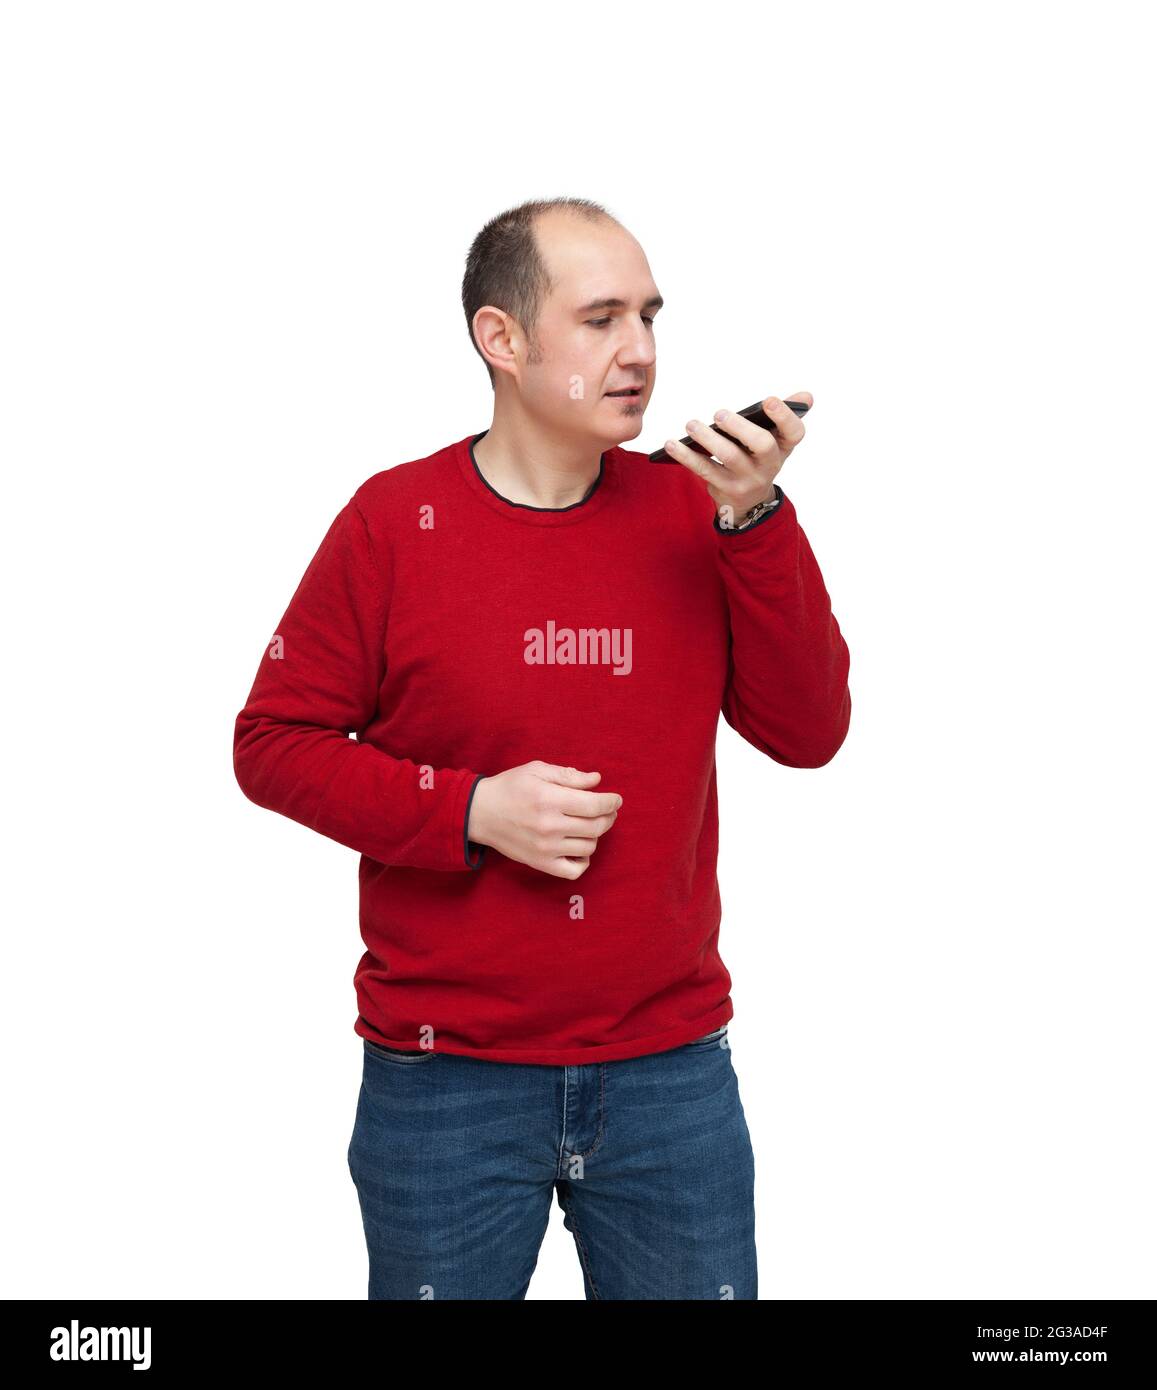 Ein kahler junger Mann zeichnet mit seinem Mobiltelefon eine Tonnote auf. Die Person ist mit einem roten Pullover, Jeans und einer Uhr bekleidet. Der Hintergrund ist Stockfoto